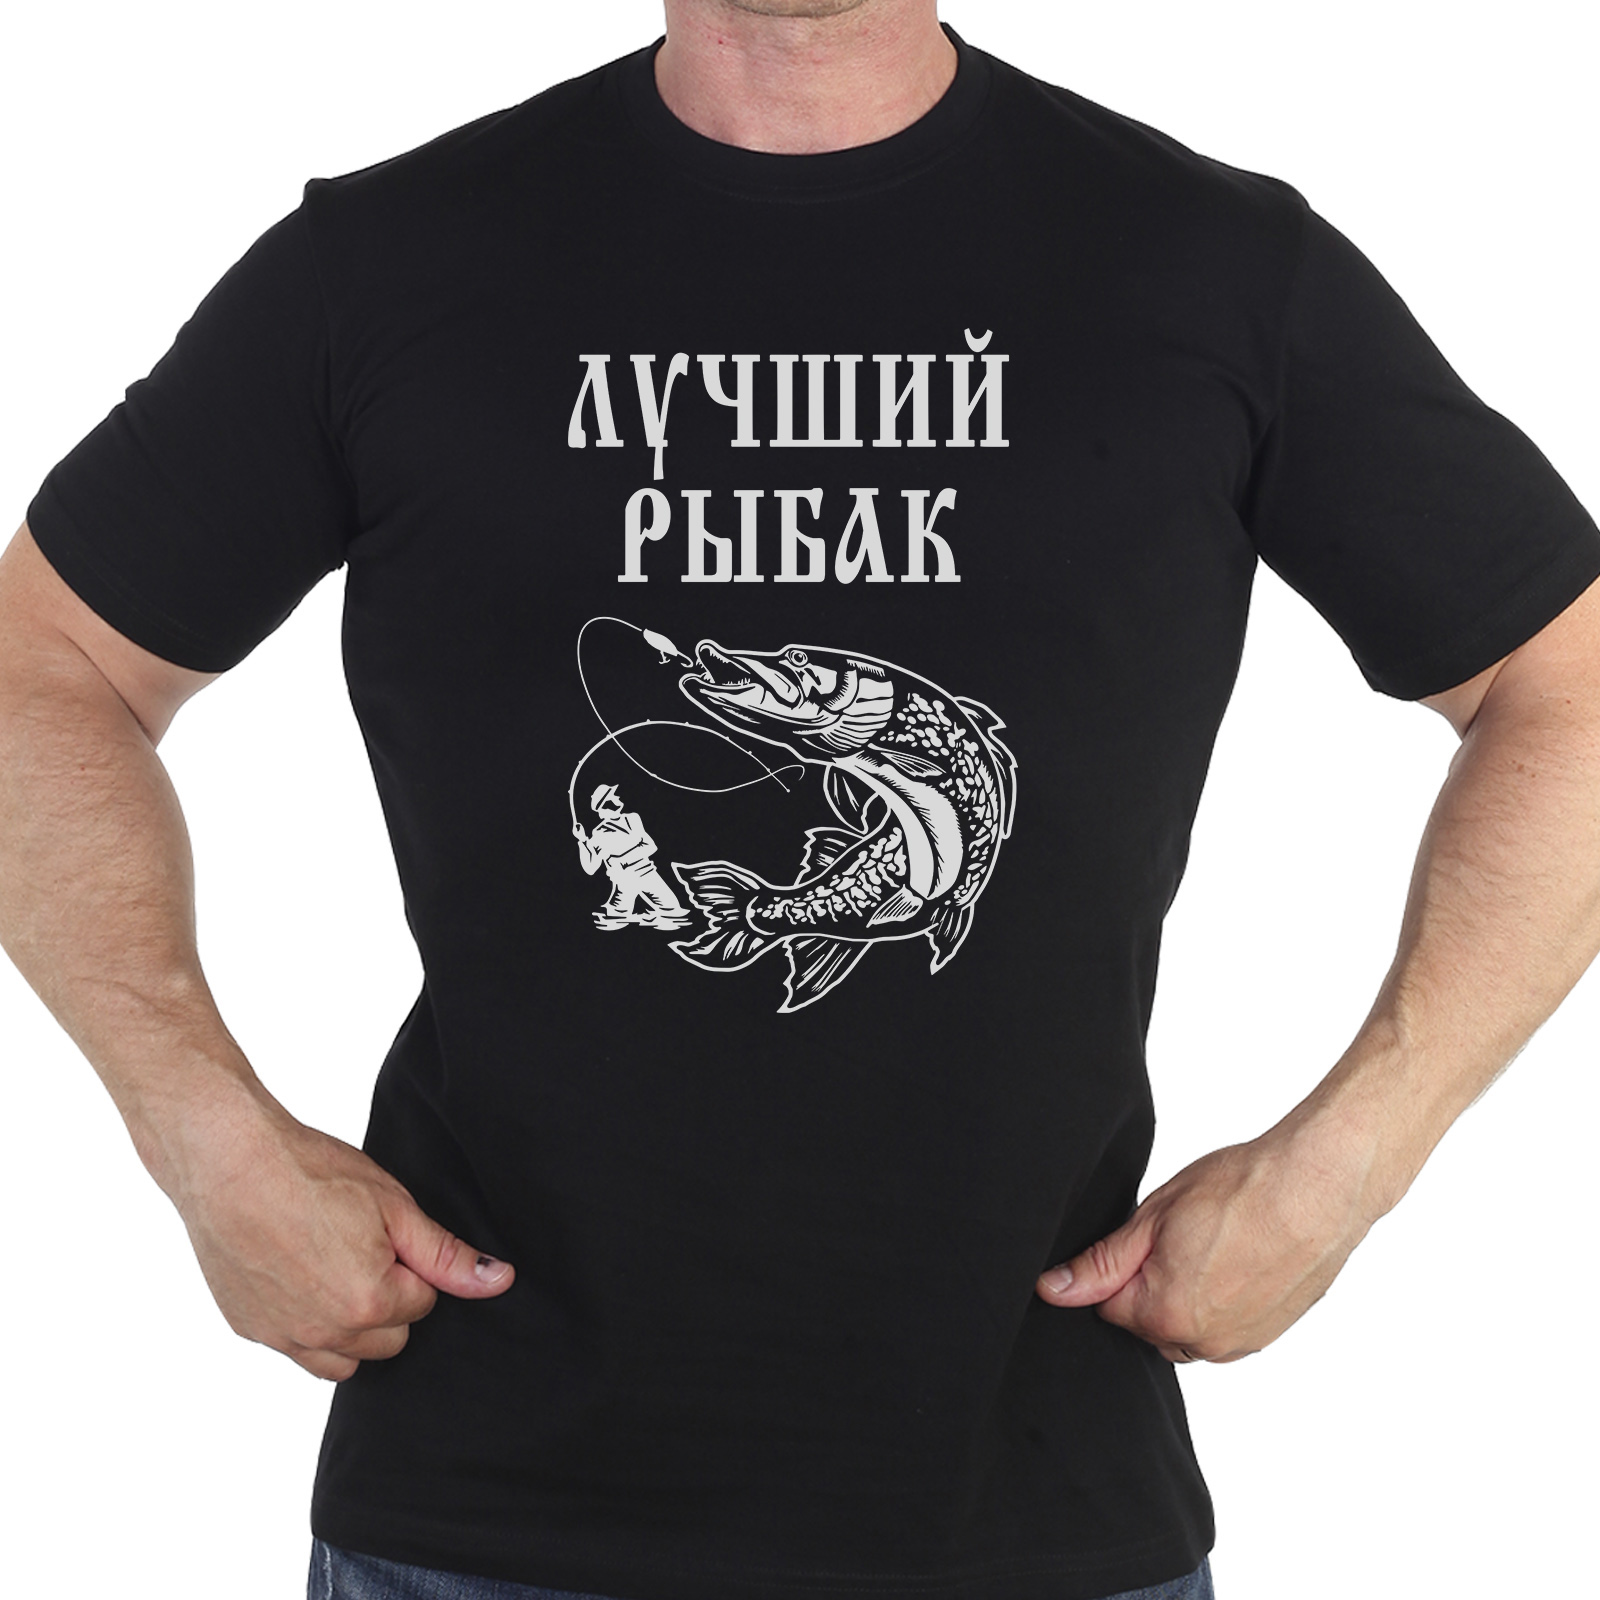 Недорогая мужская футболка «Лучший Рыбак»